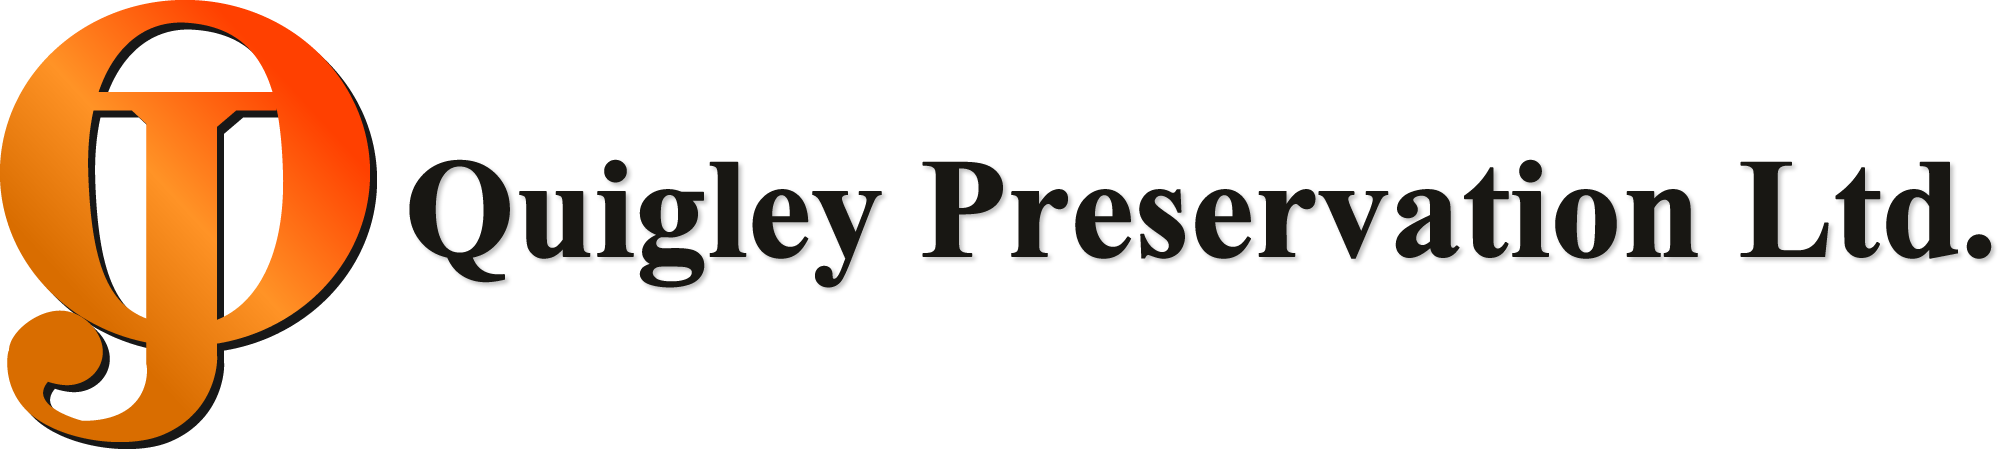 Quigley Preservation Ltd.